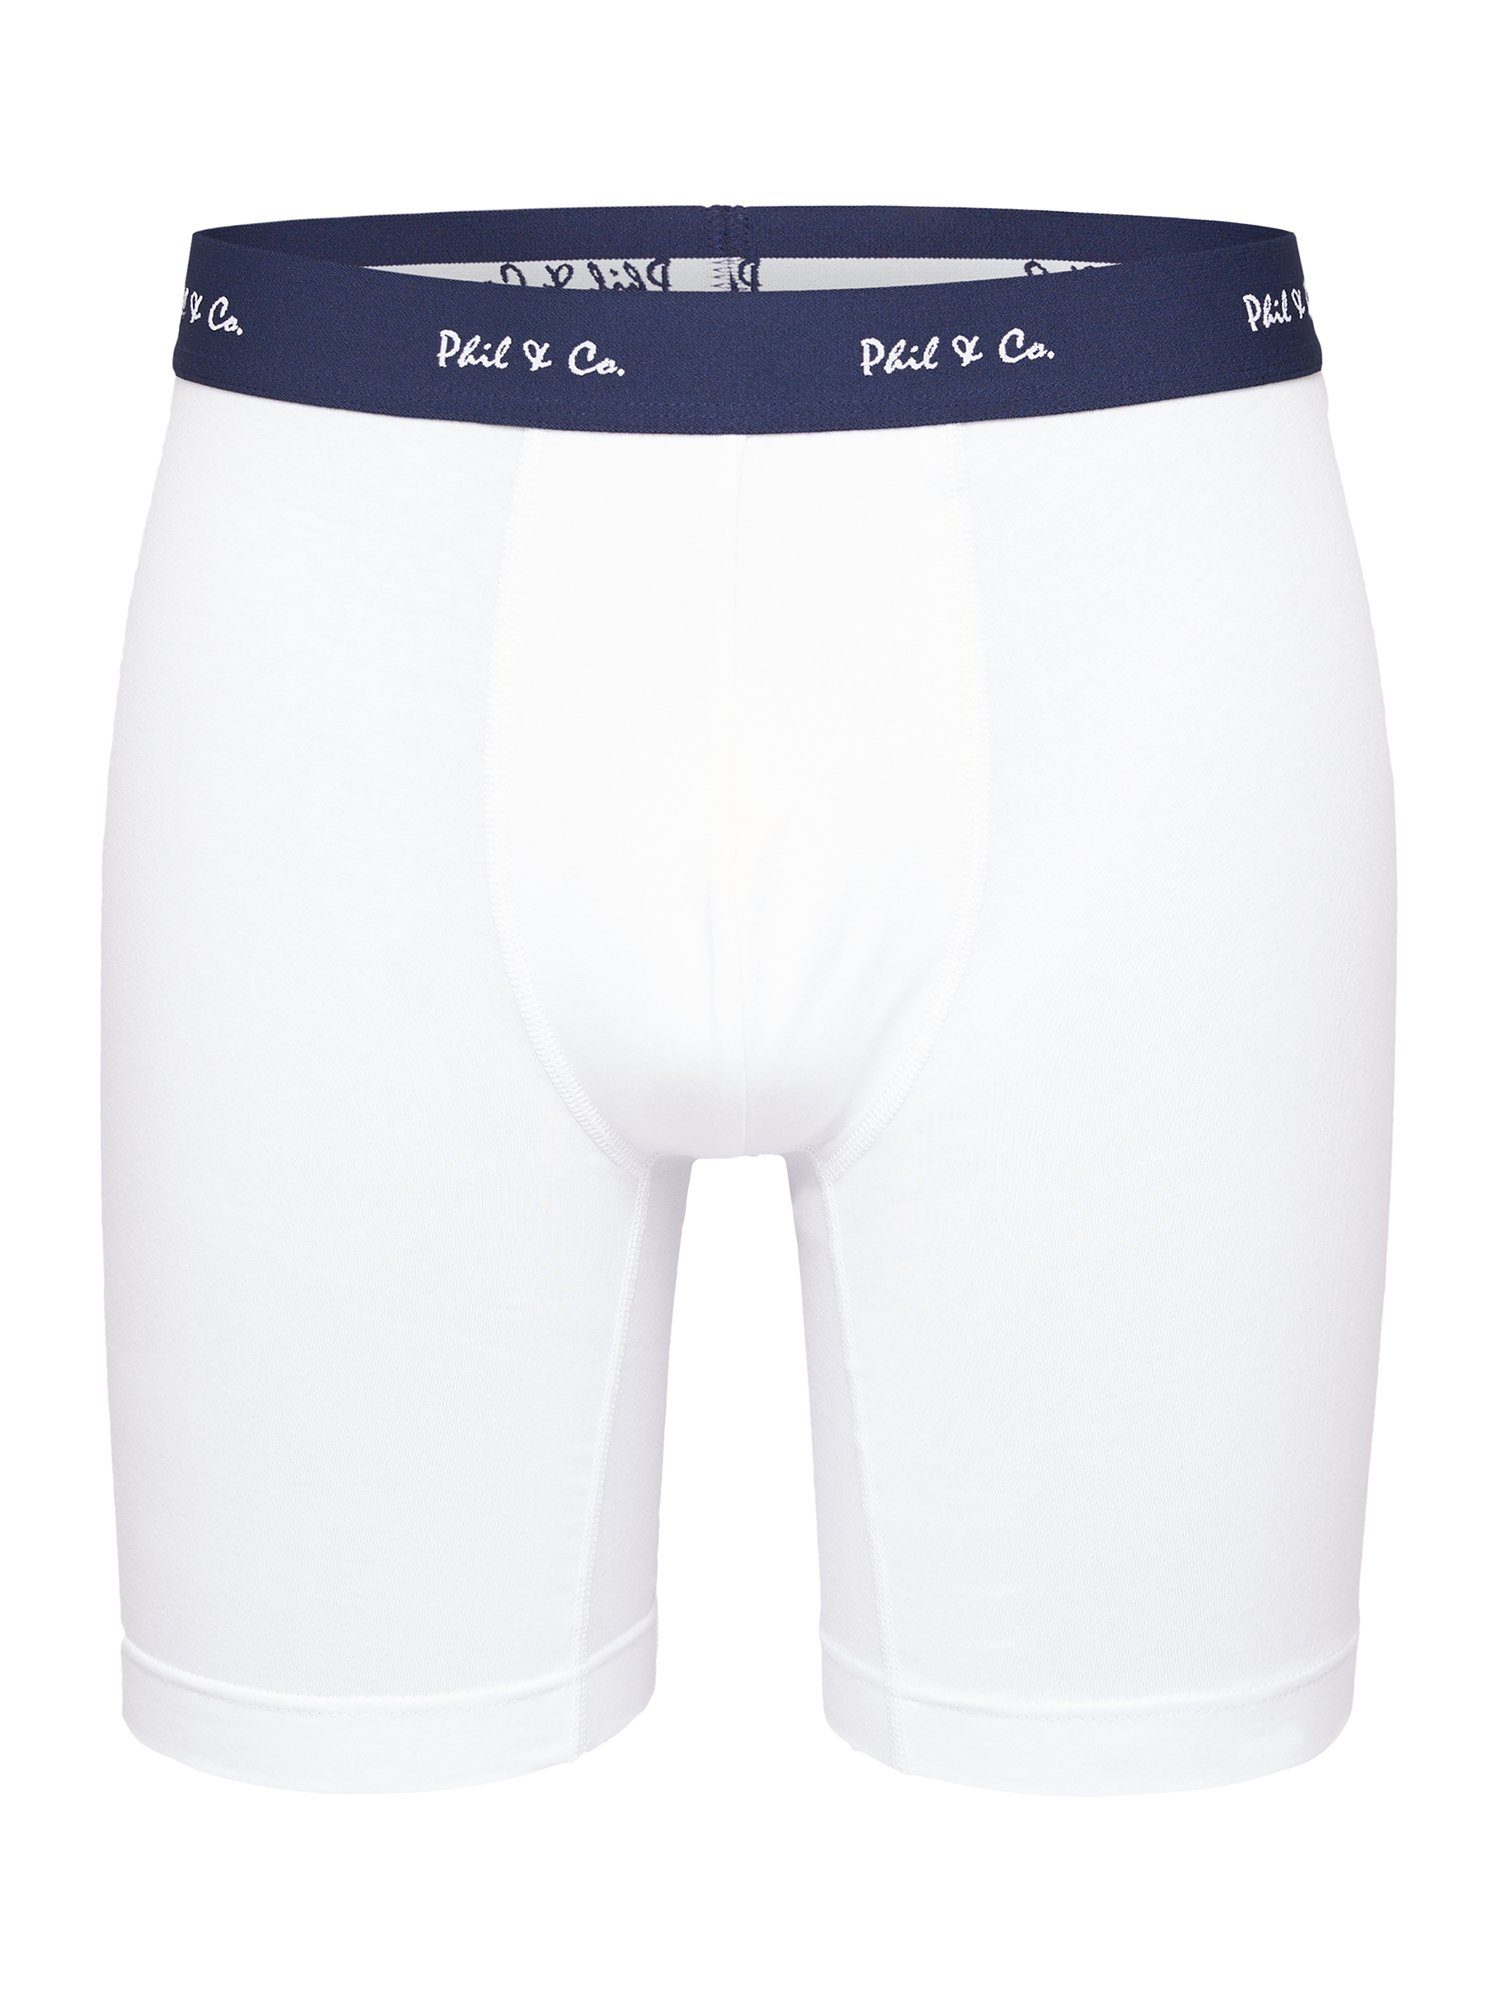 Phil & Co. Langer Boxer Long black Boxer white beige Unterhose (3-St) Retro-Shorts Boxer-Brief Jersey